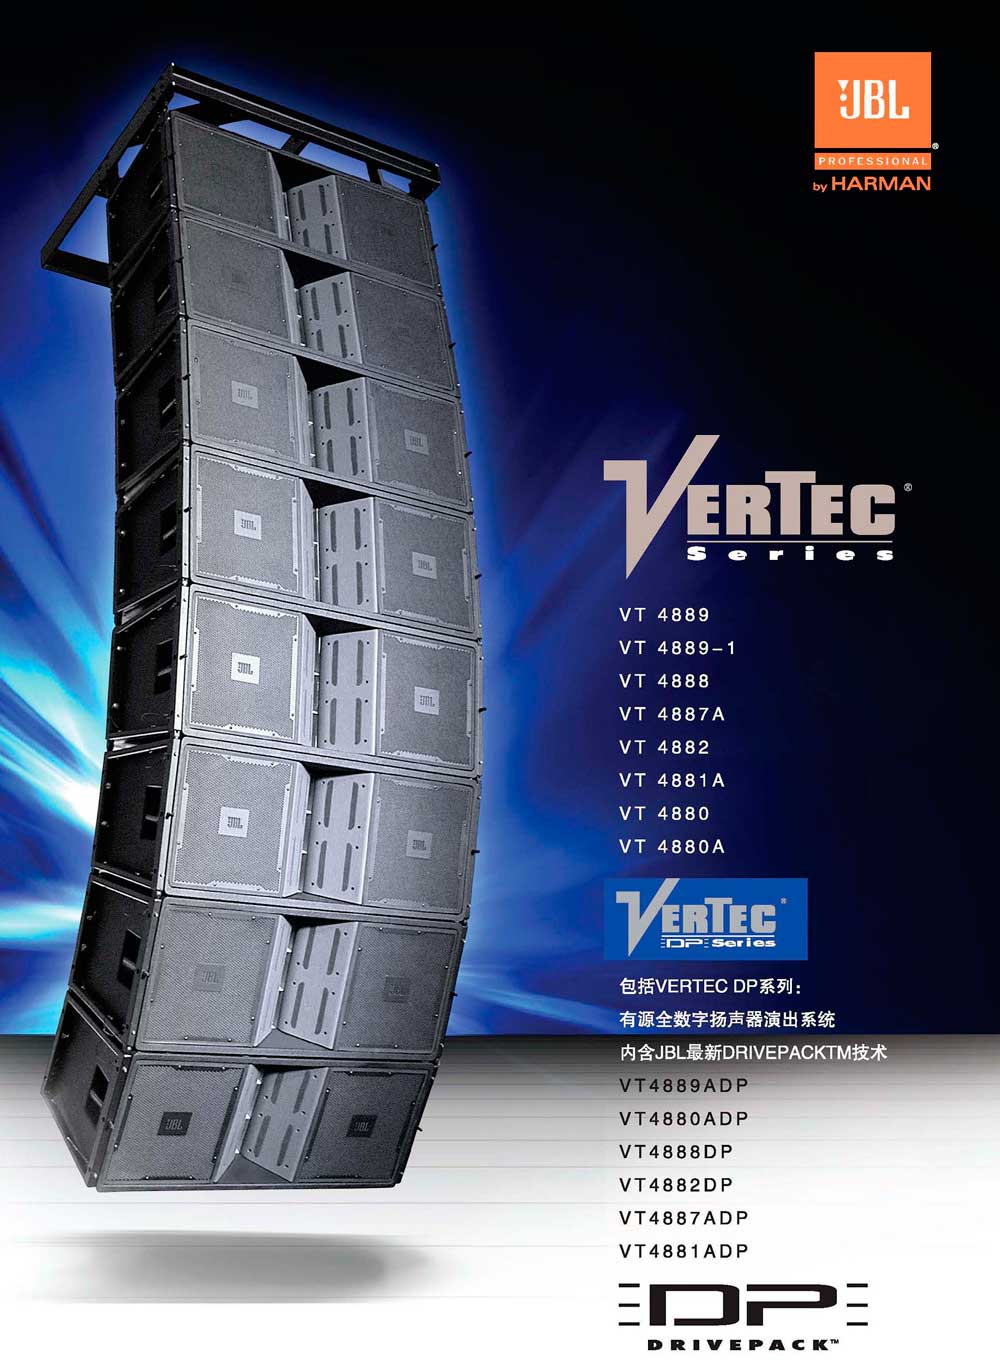 JBL VERTEC系列线阵音响 VT4887ADP VT4888DP  VT4882DP VT4881ADP VT4880 VT4881A VT4882 VT4883 VT4886 VT4887A VT4888 大型演出阵列音响系统